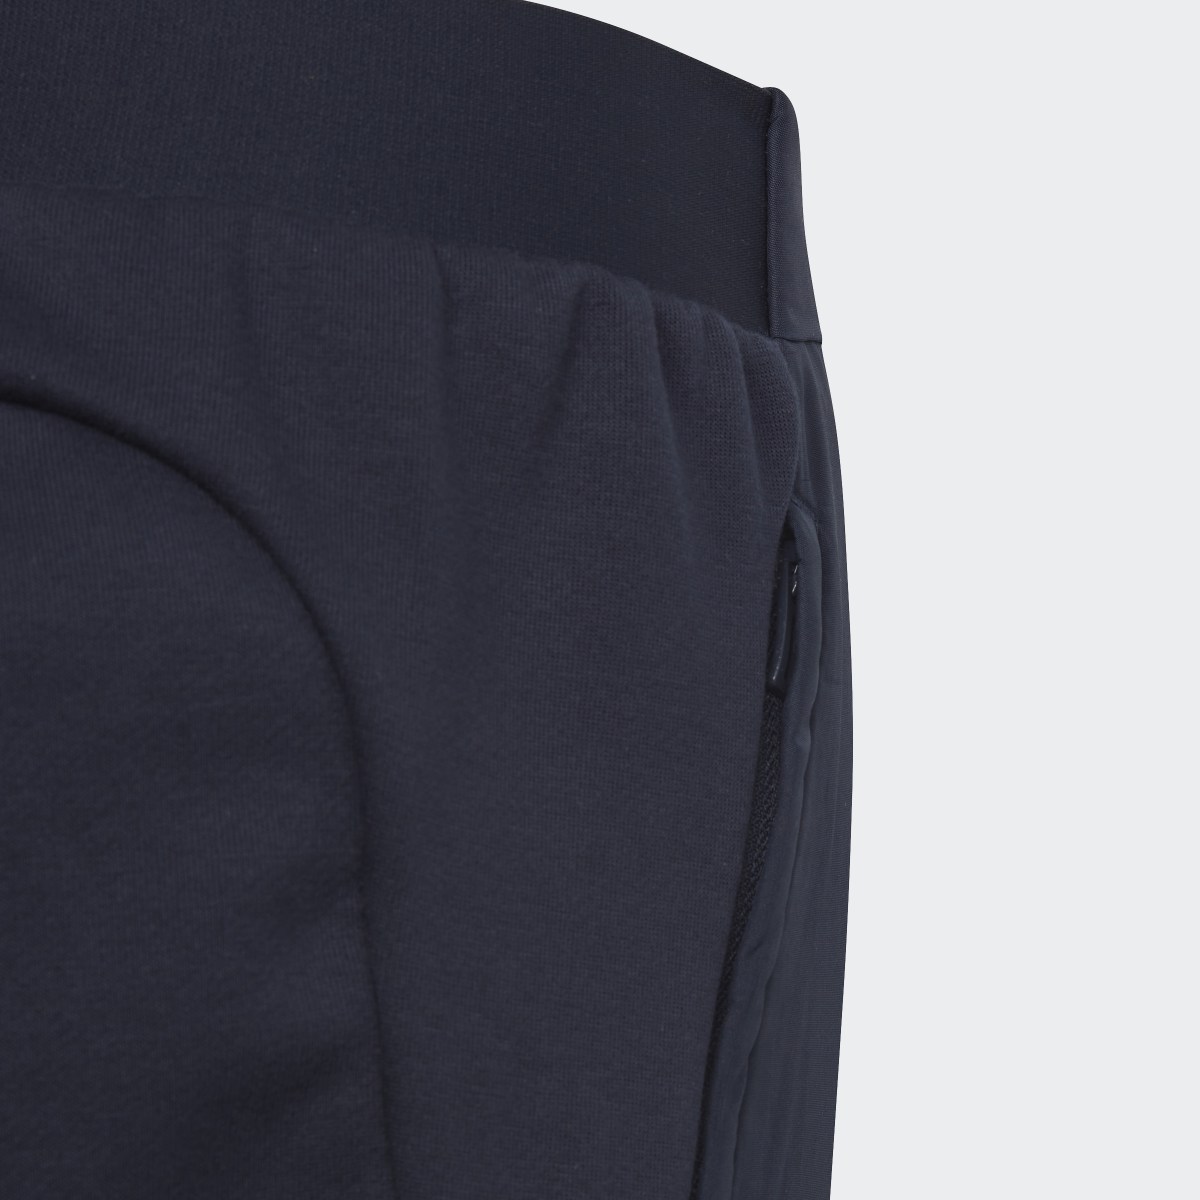 Adidas Pantaloni Designed 4 Gameday. 5